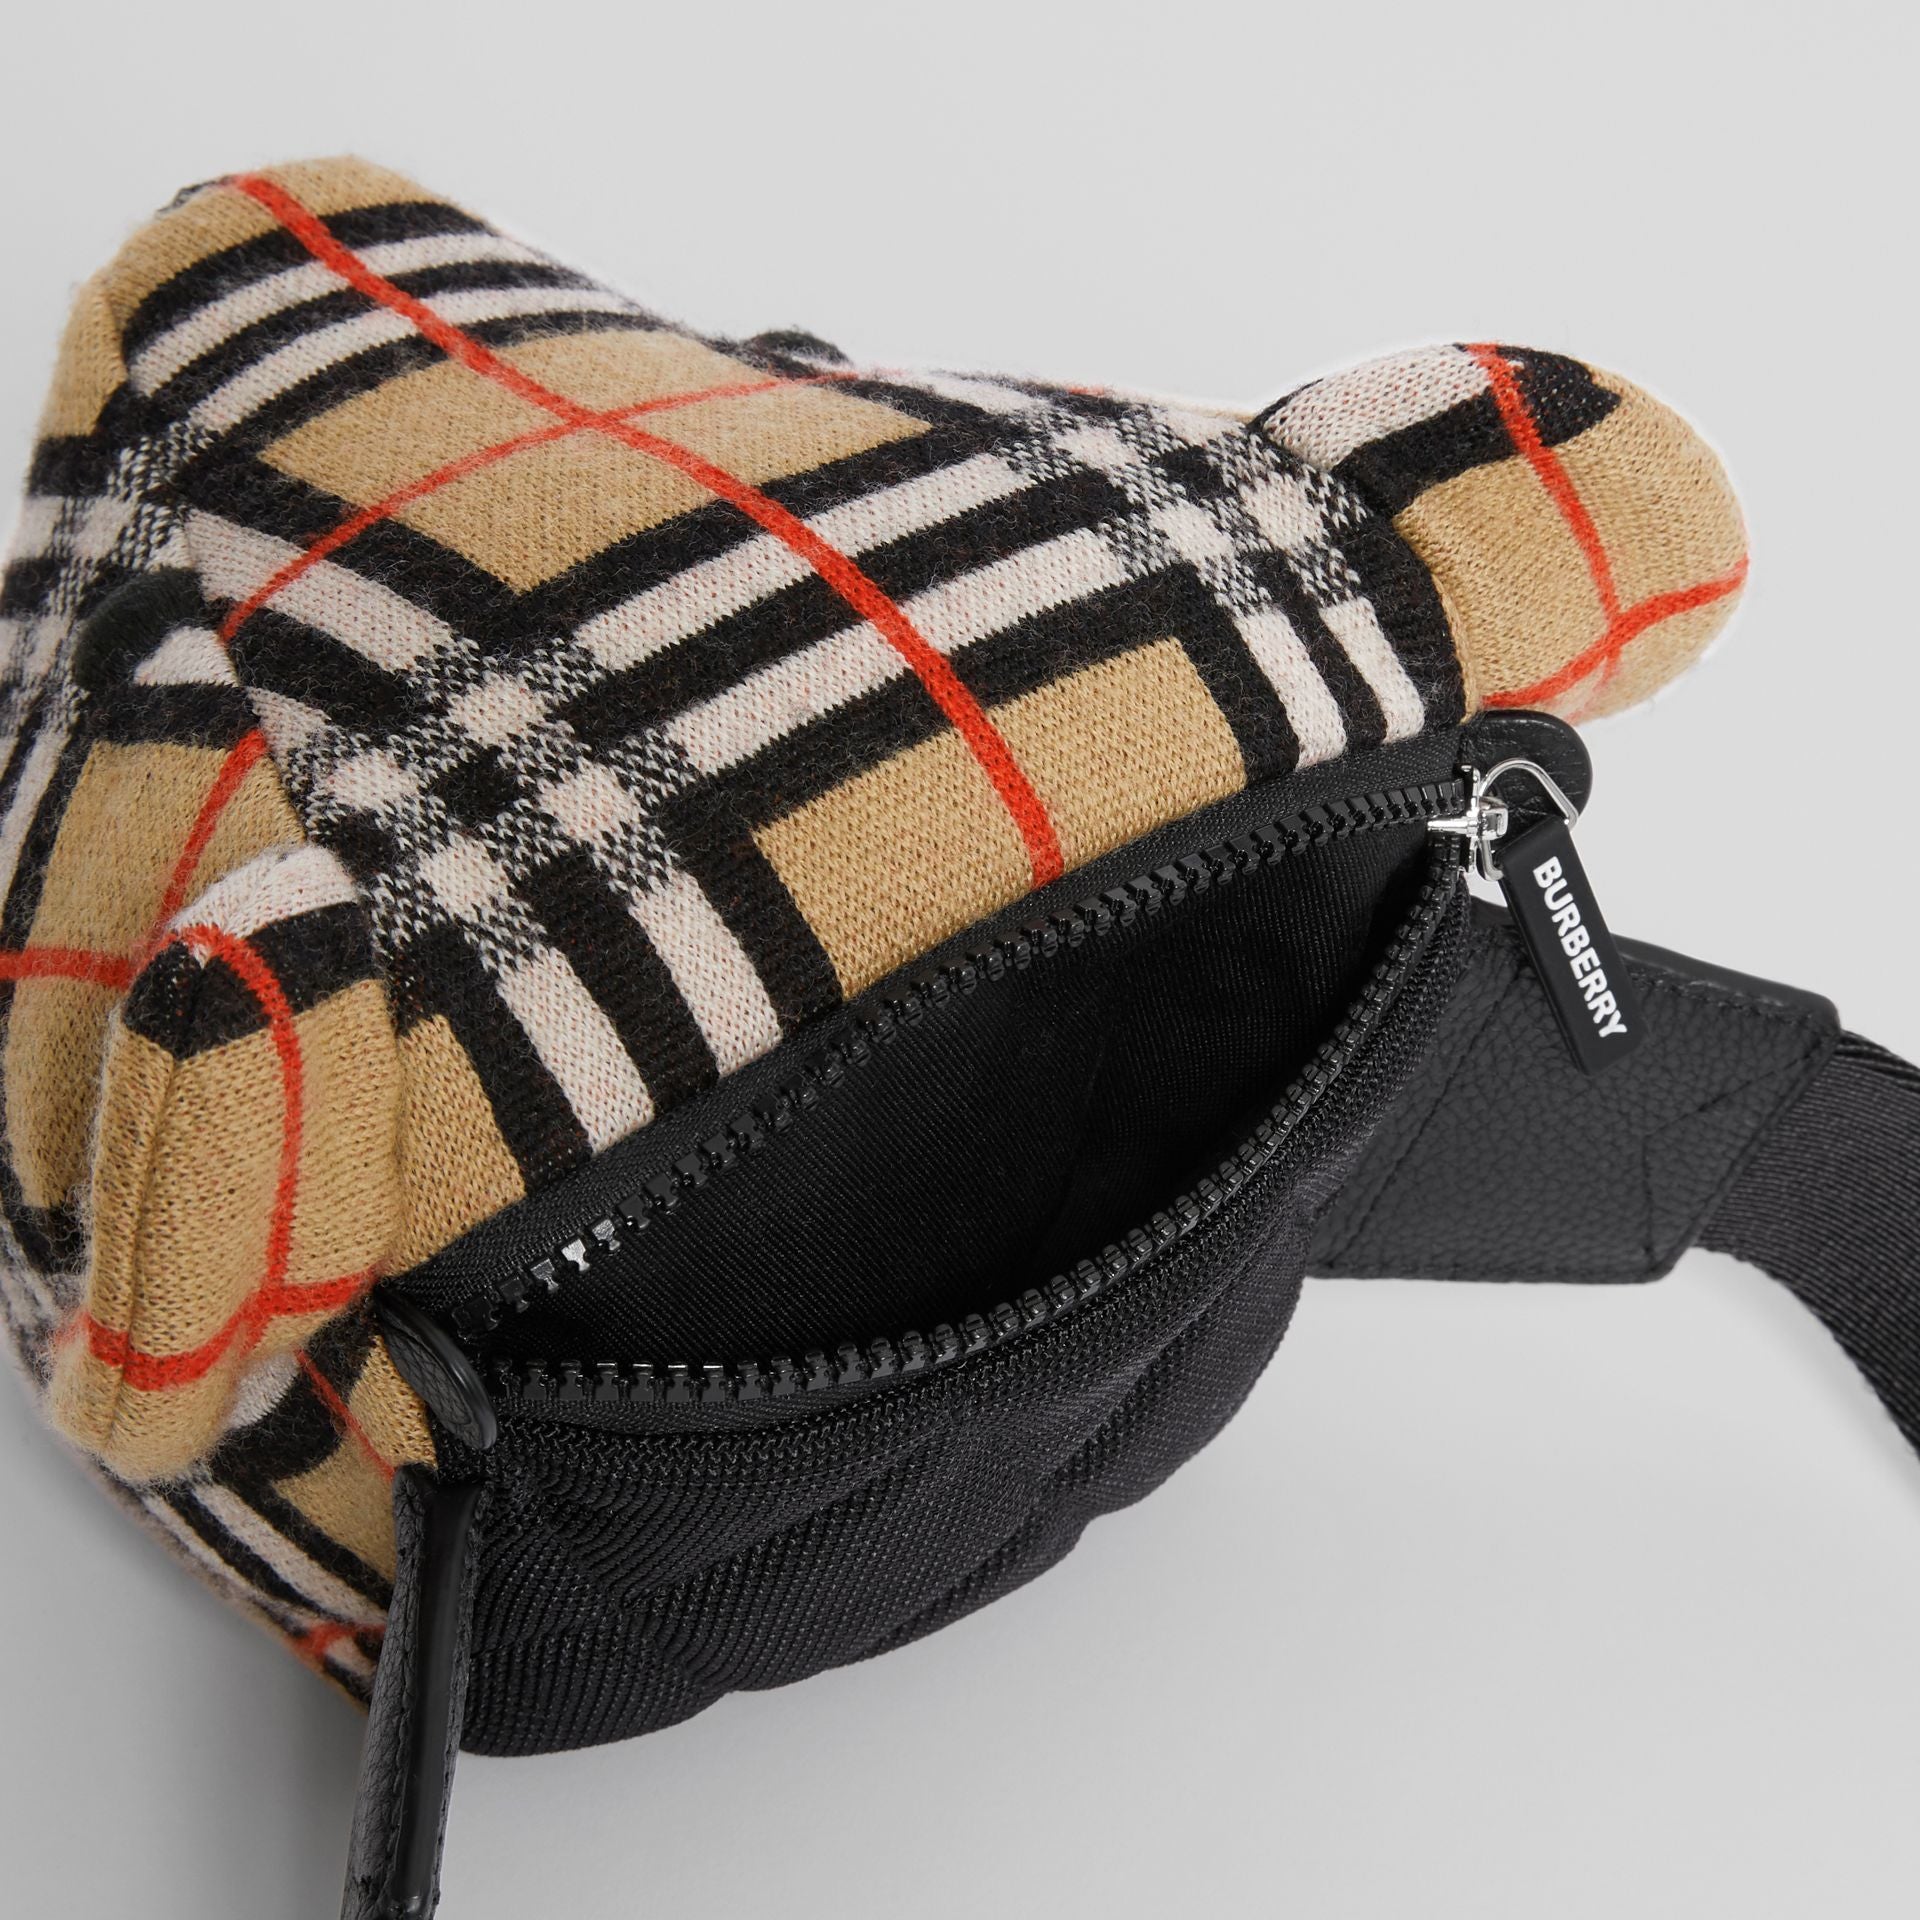 Thomas Bear Merino Wool Vintage Check Bag